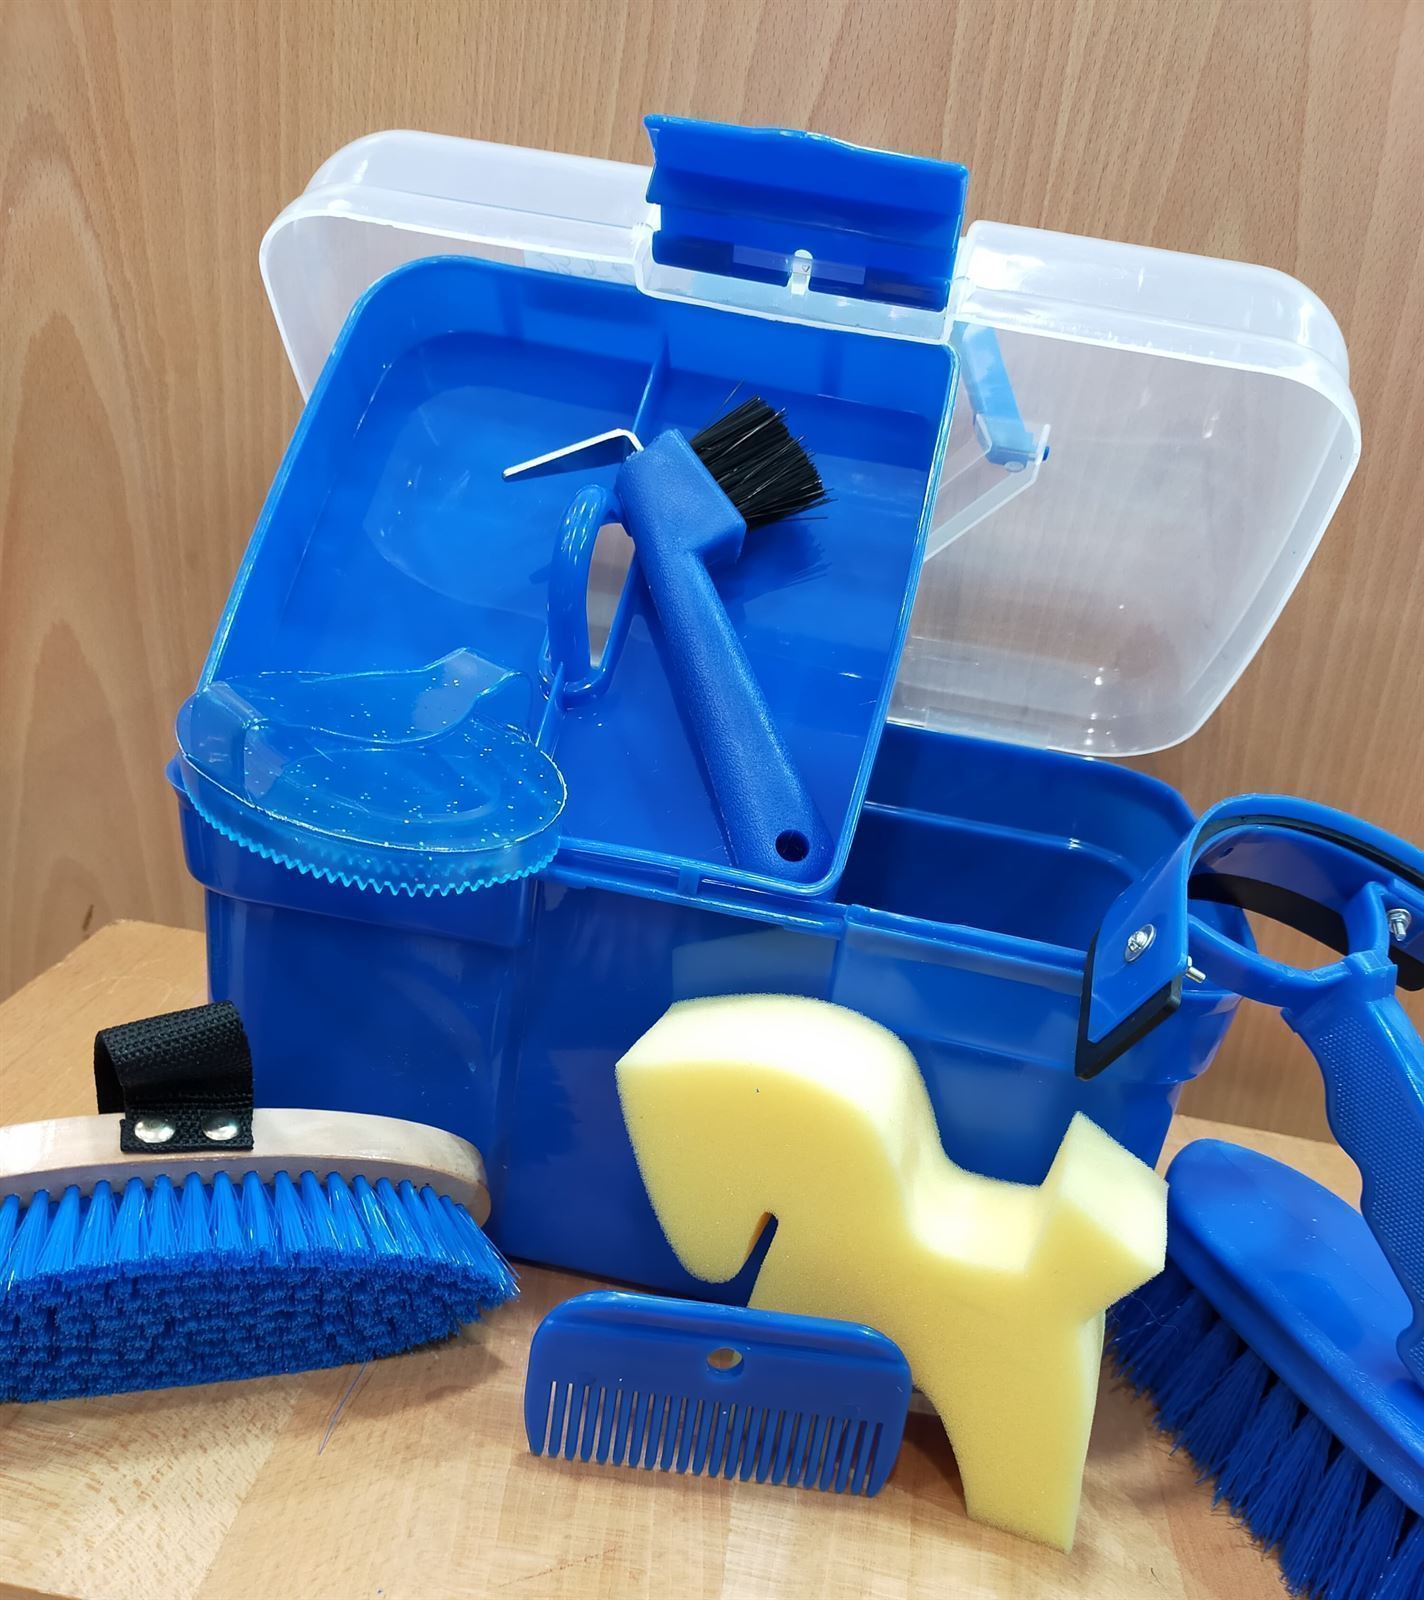 Caja útiles de limpieza HKM Sports Equipment, color azulón - Imagen 1